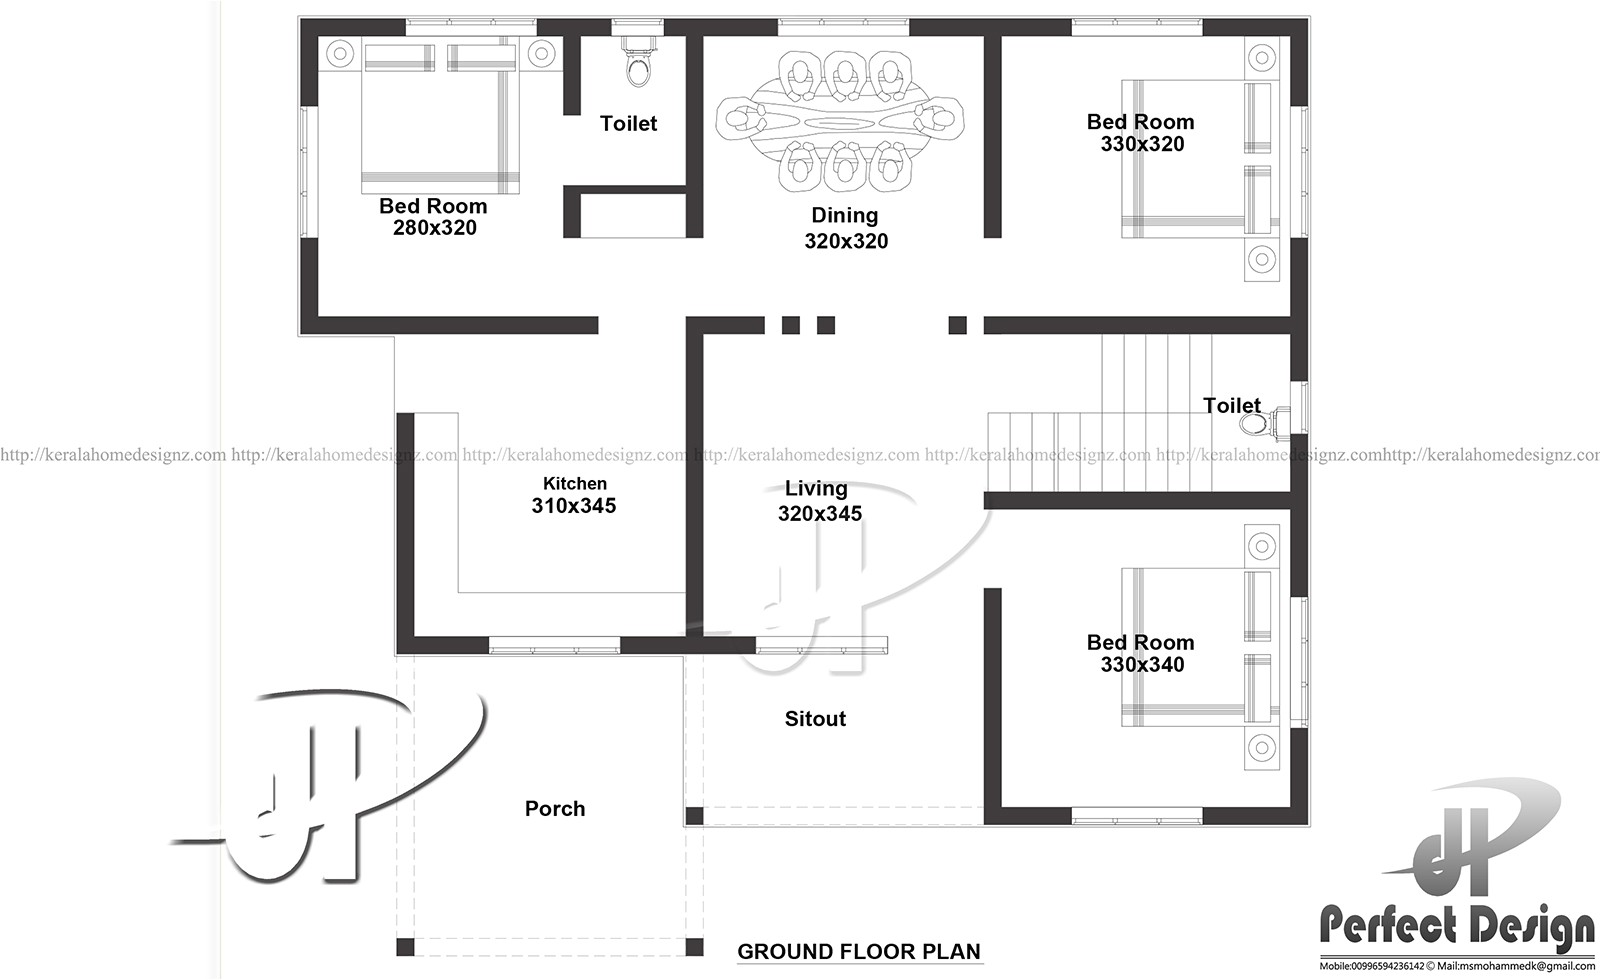 Floor Plans for Square Meter Homes 1000 Sq Ft Modern Single Floor Home Kerala Home Design